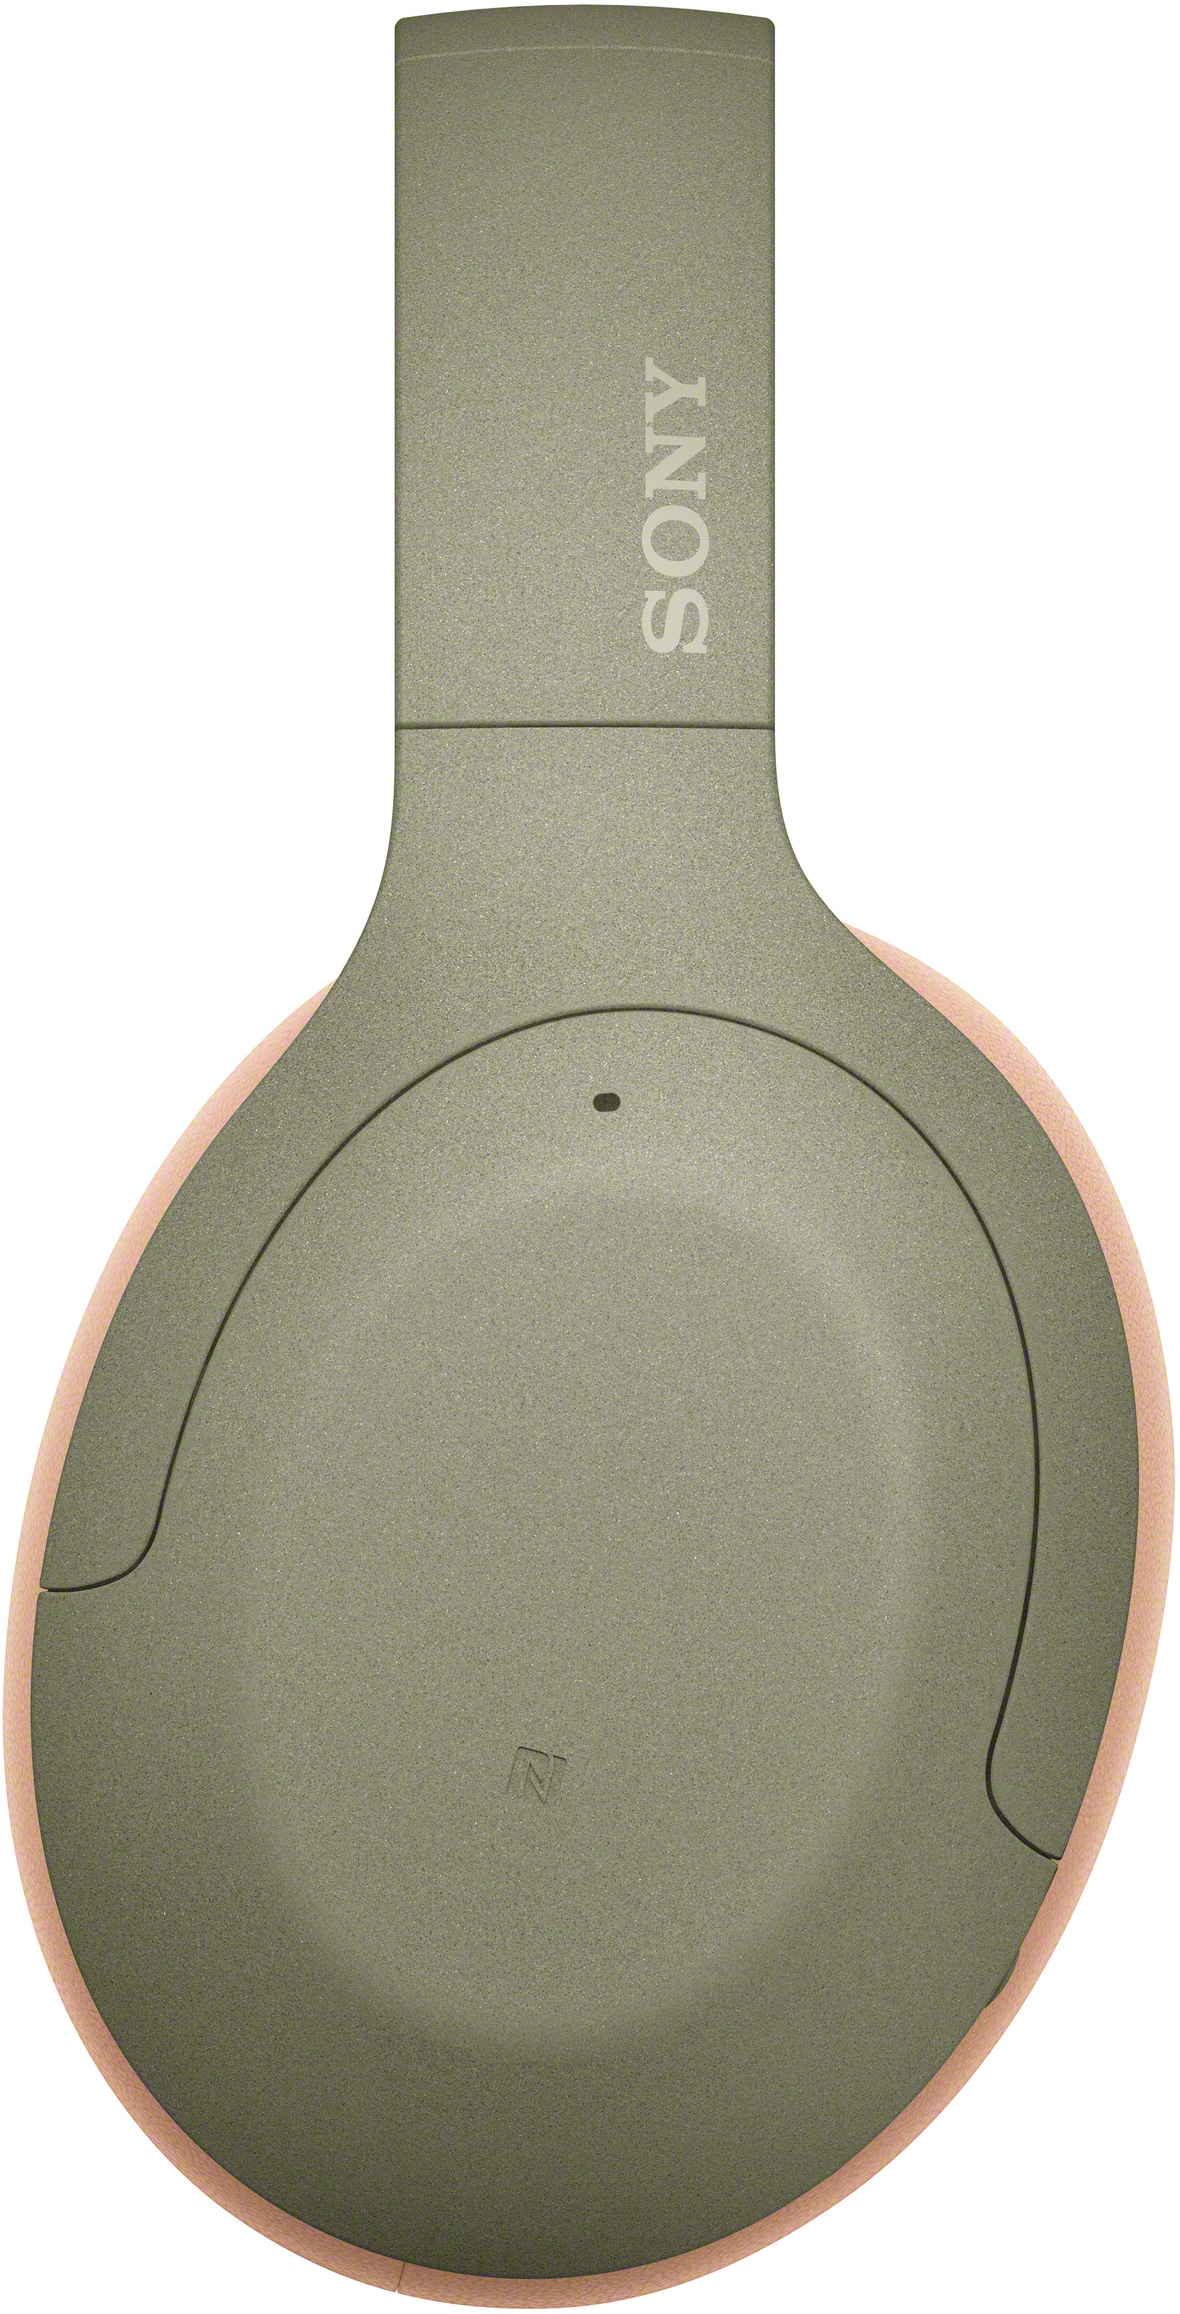 h.ear on WH-H910N, Bluetooth SONY 3 Kopfhörer Grün Over-ear